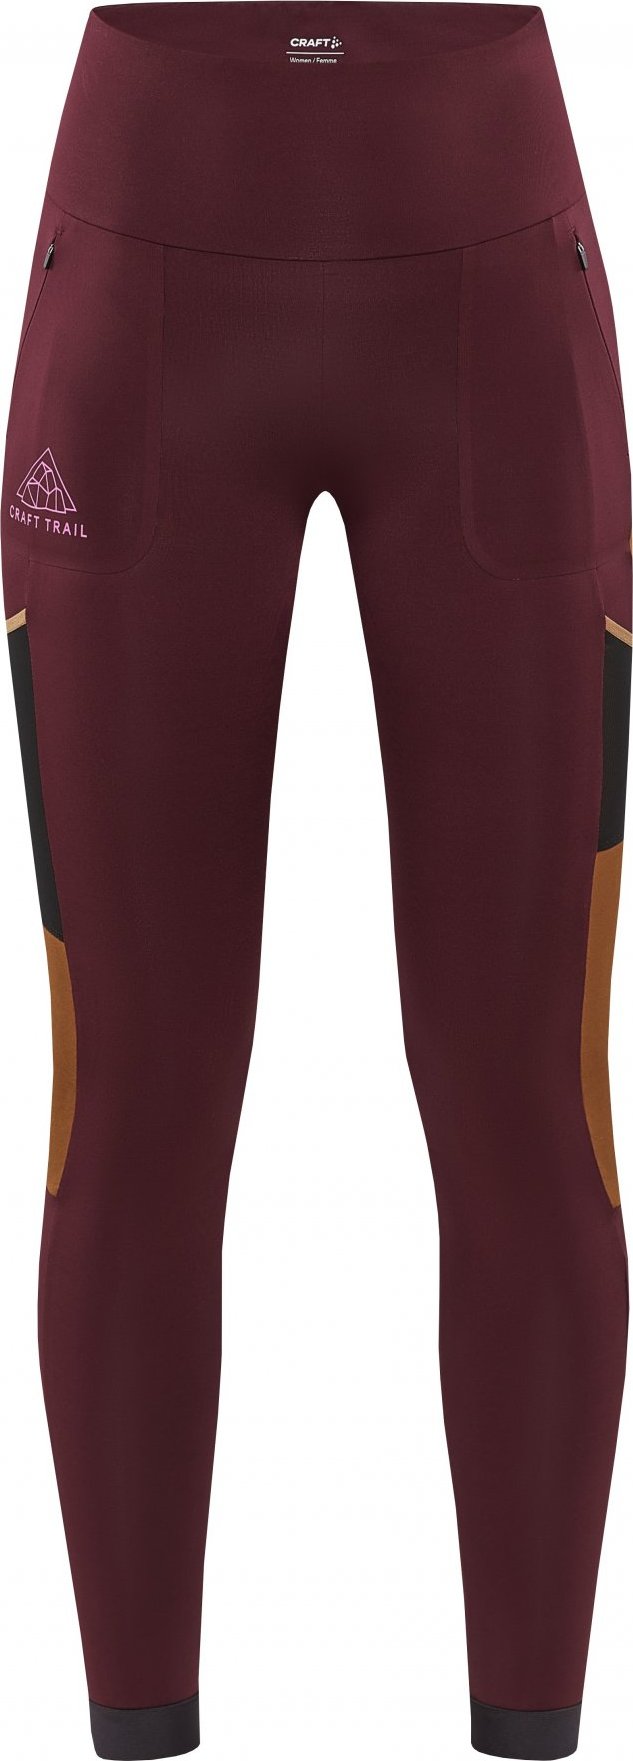 Dámské elastické kalhoty CRAFT Pro Trail Tights fialové Velikost: XL